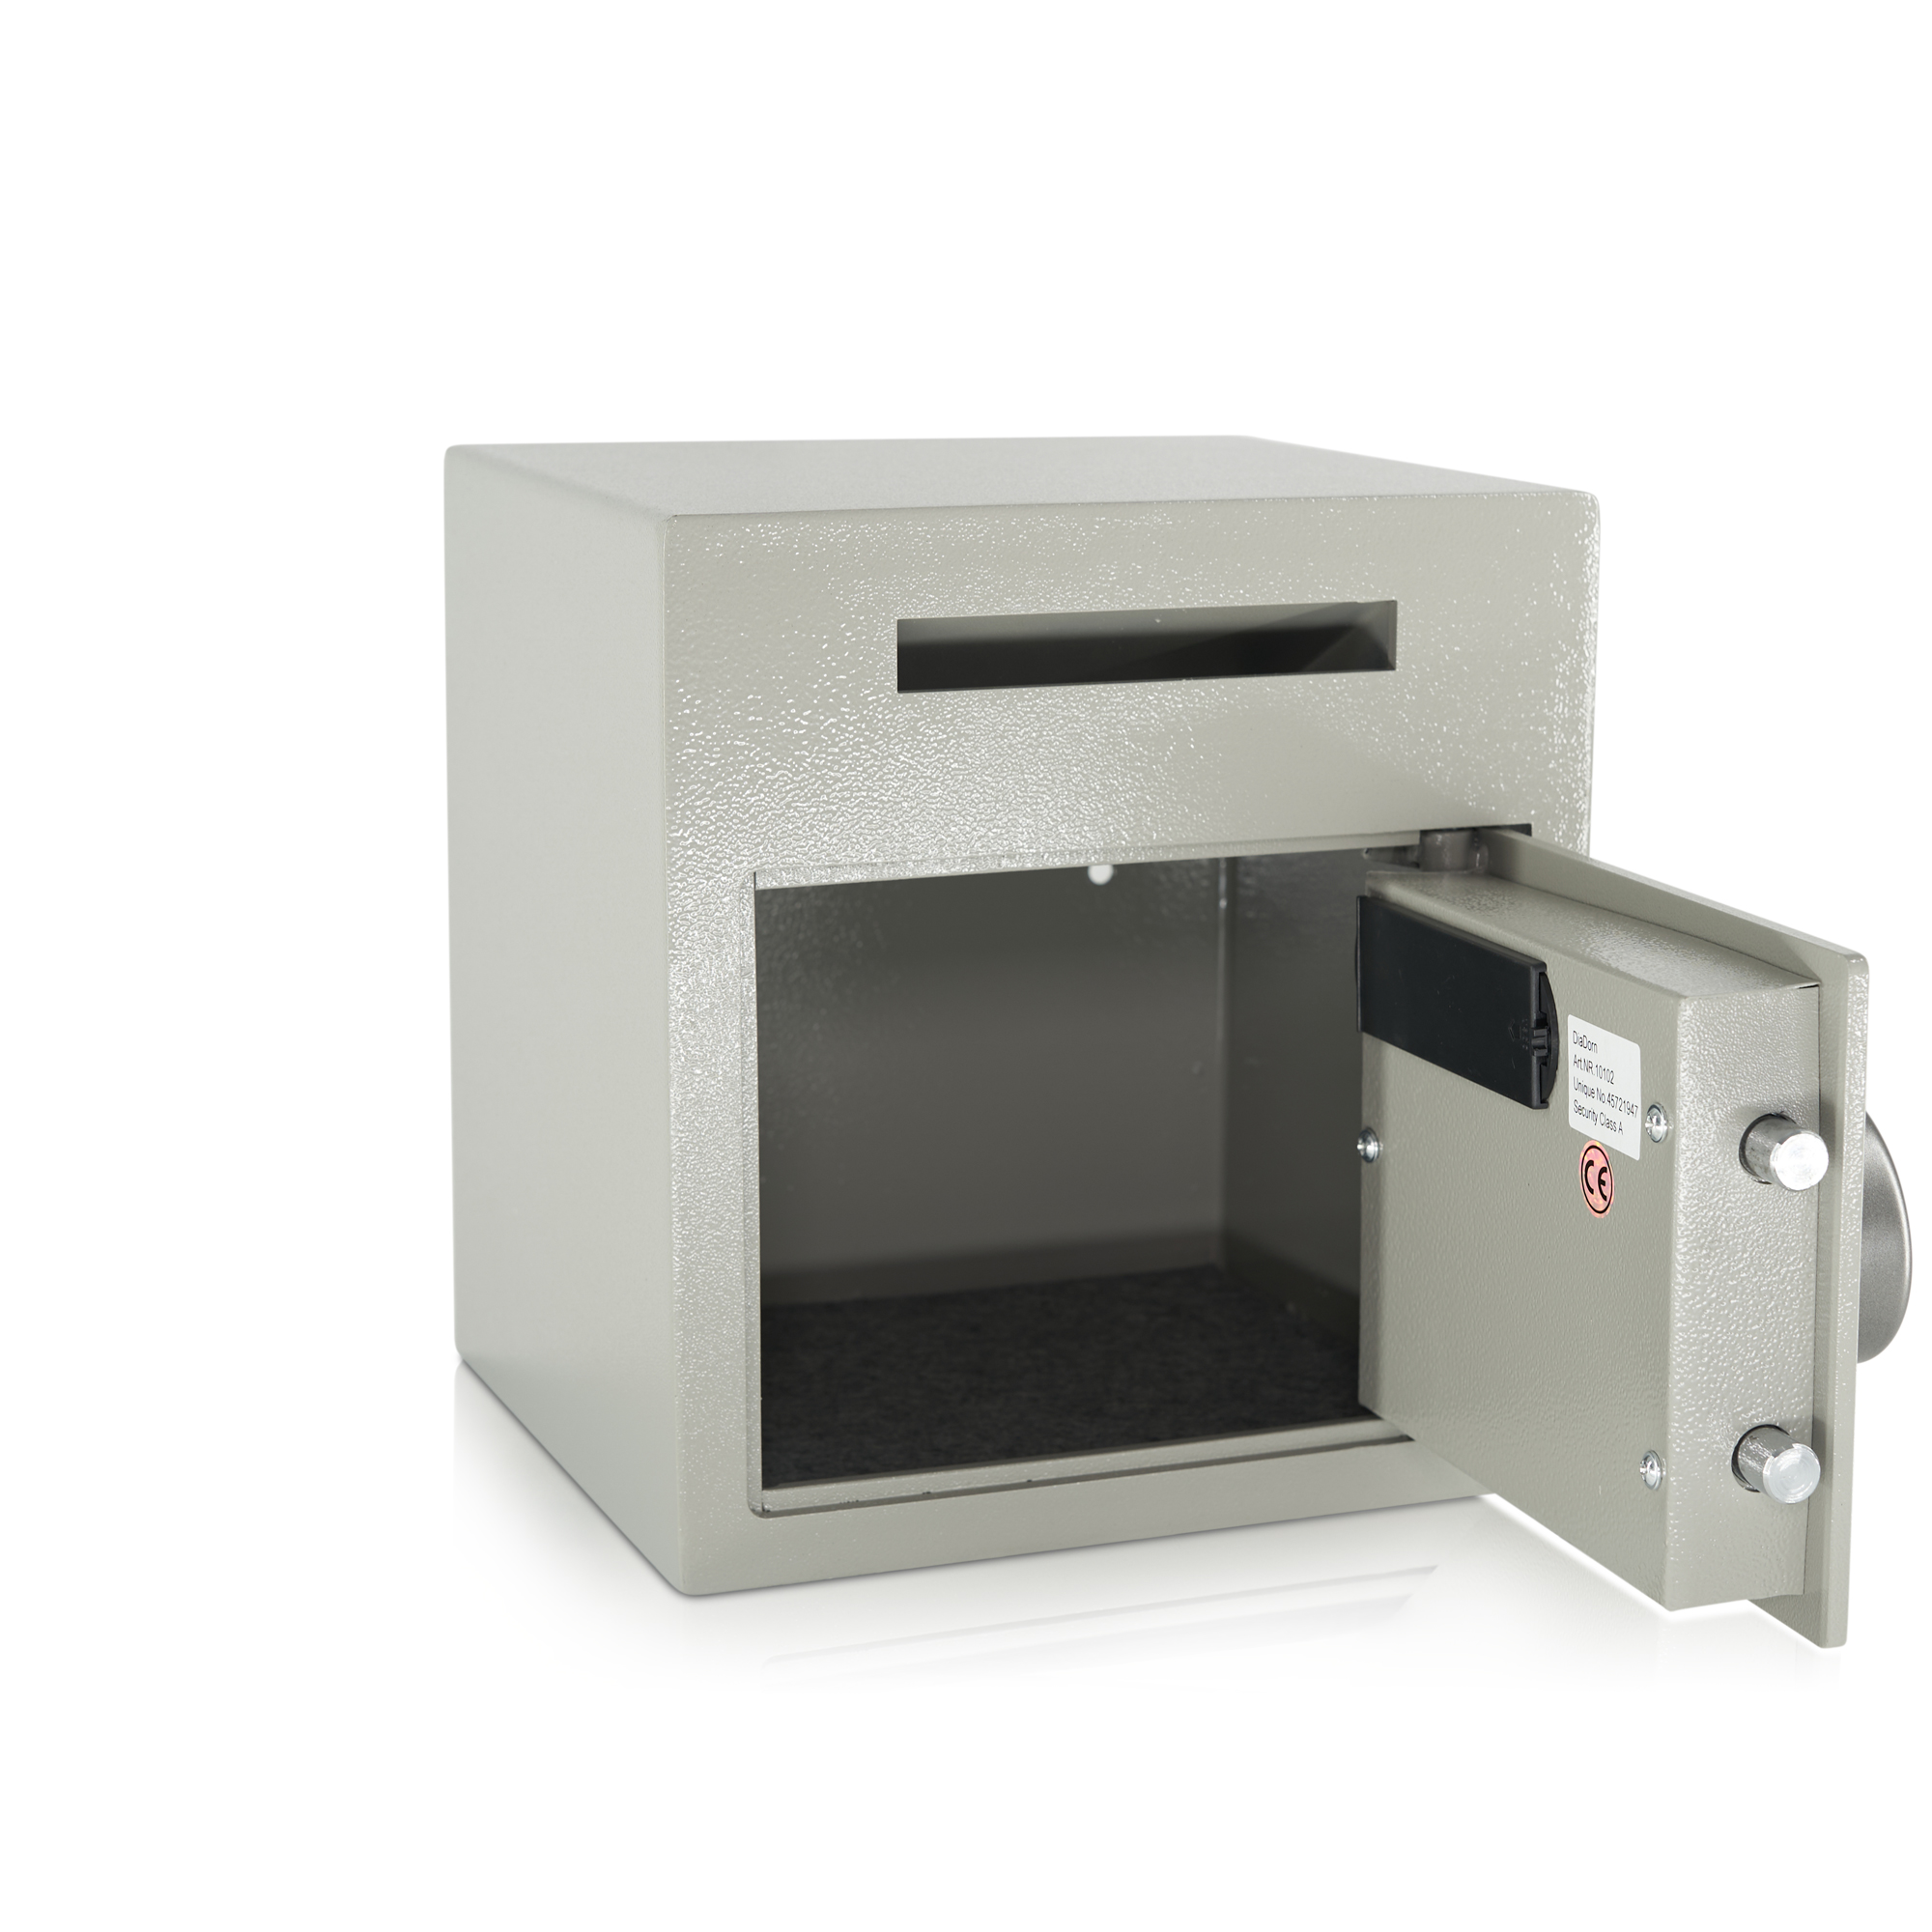 Caja de depósito | Clientes comerciales | Cerradura electrónica con código PIN | Depositsafe